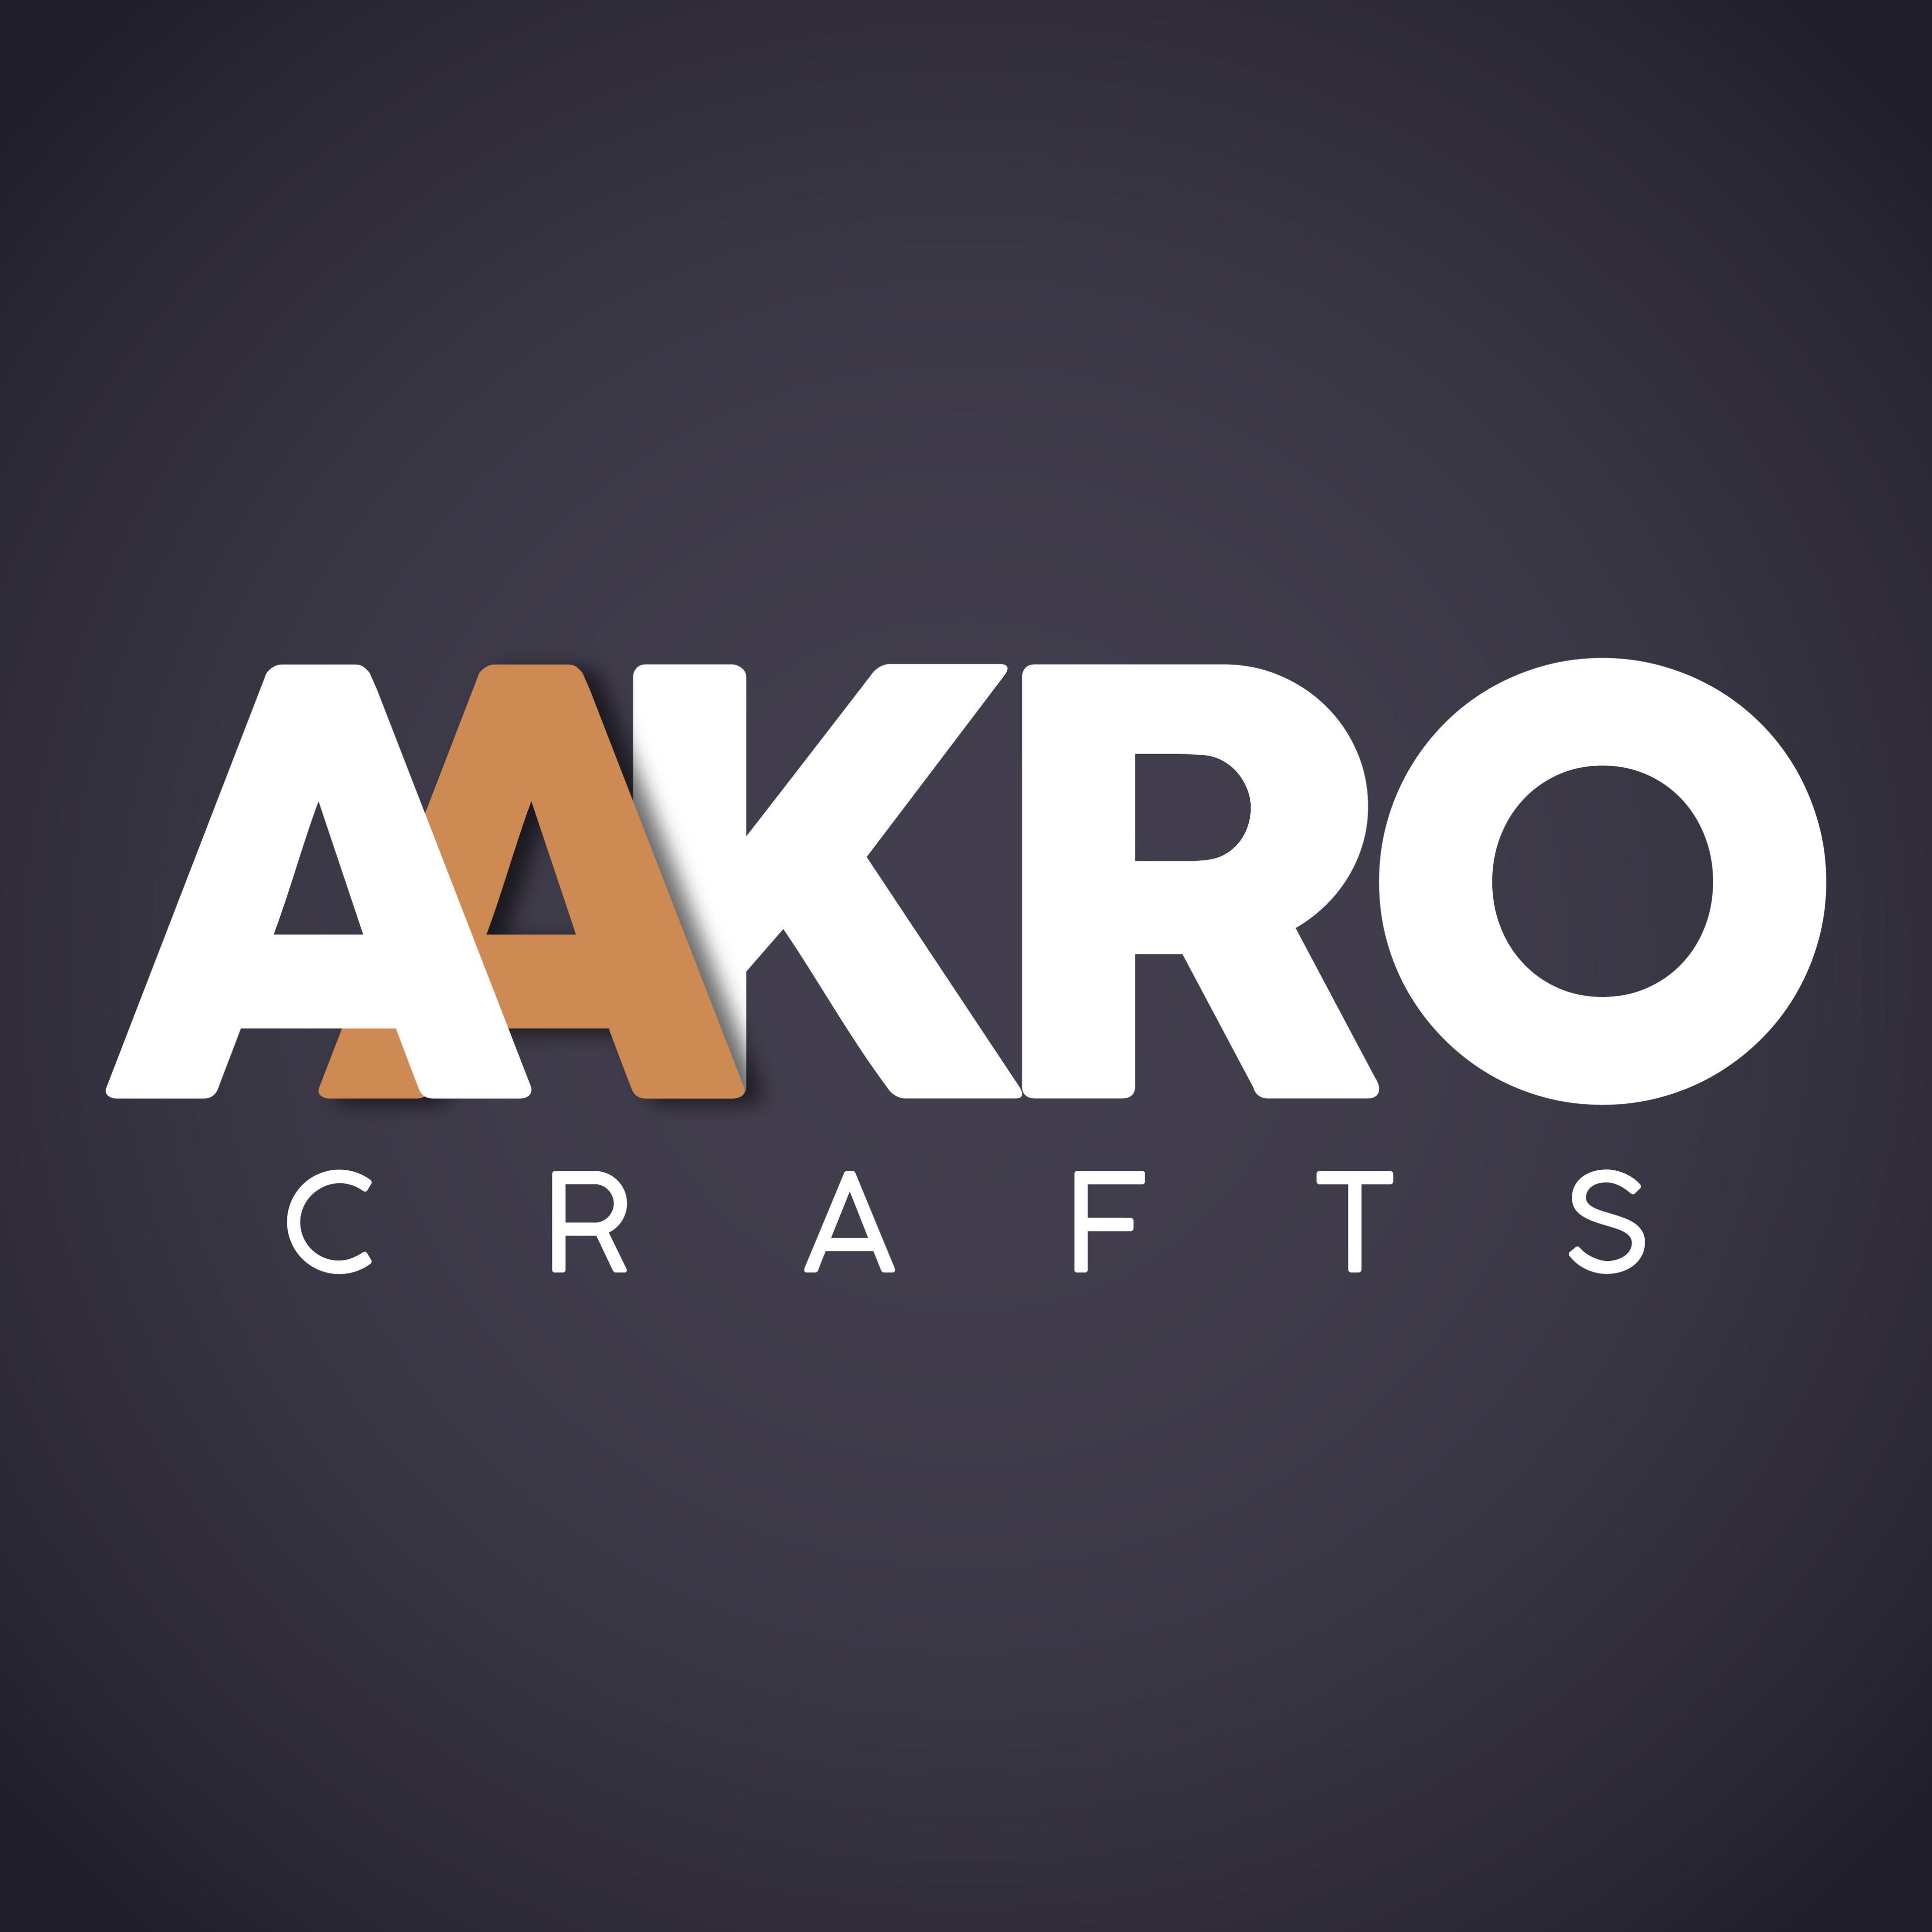 Aakro Crafts